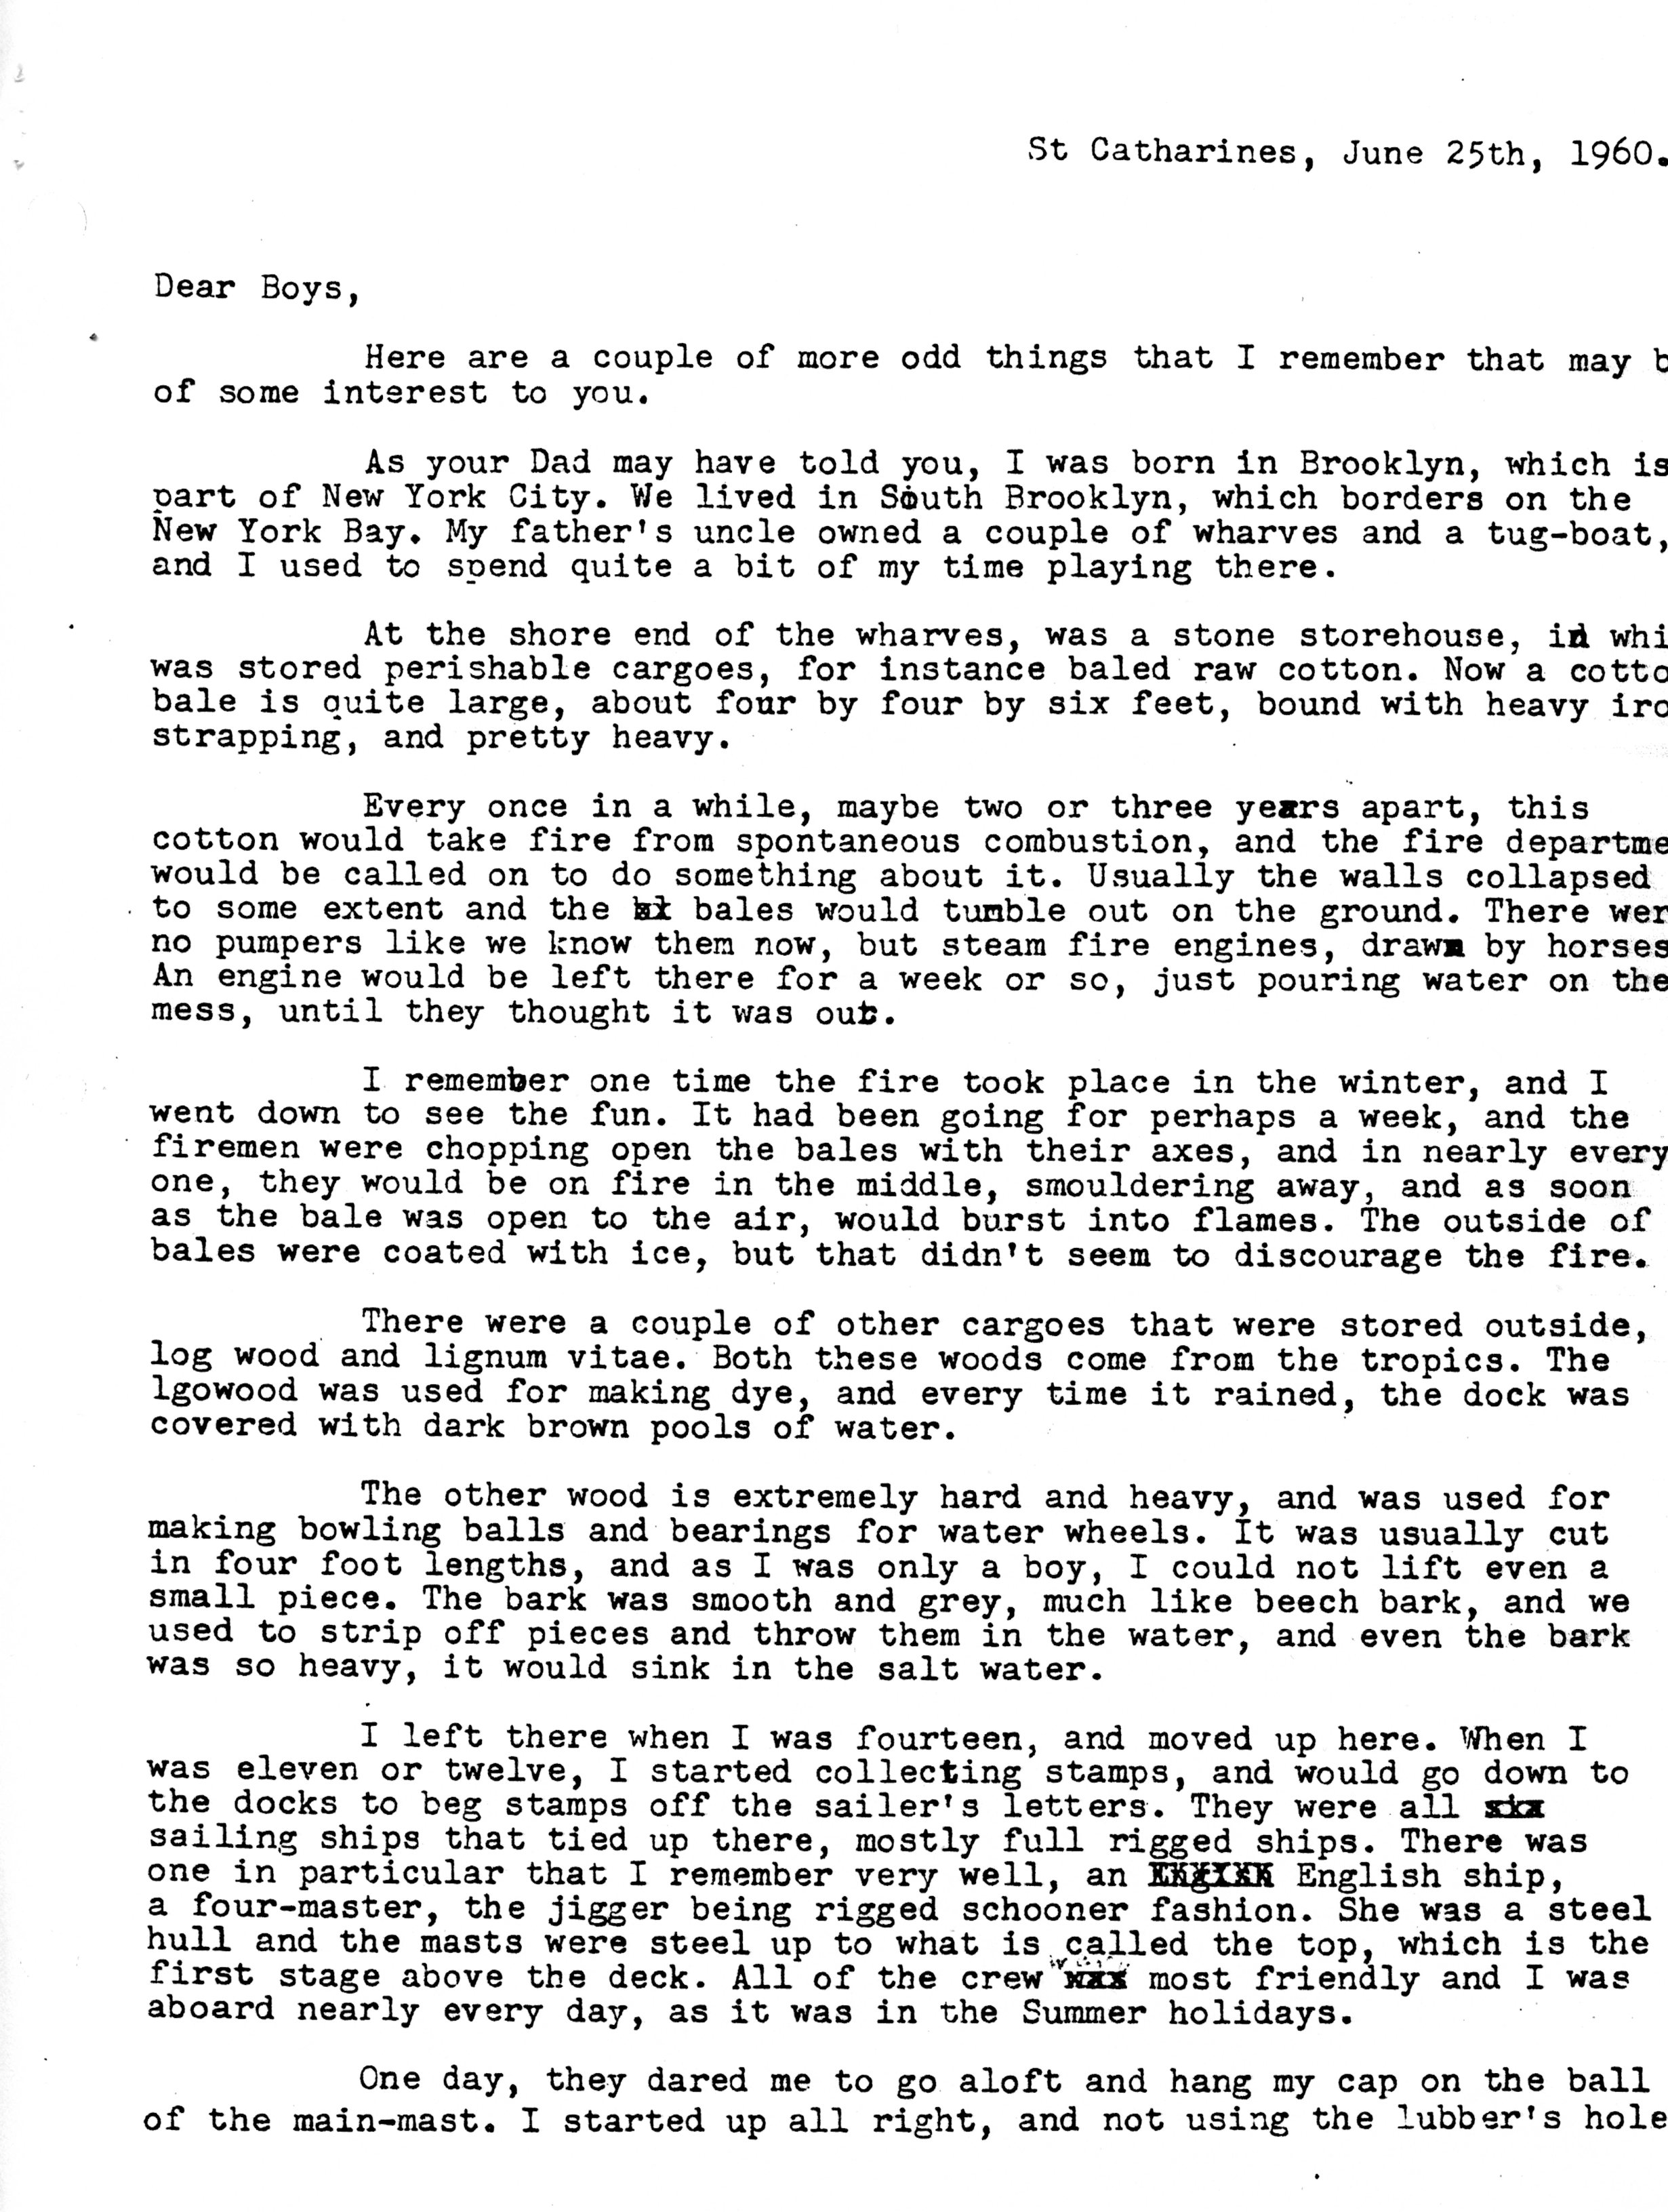 1960-06-25 p1 of 2 Letters from Wm Arnott STEVENS